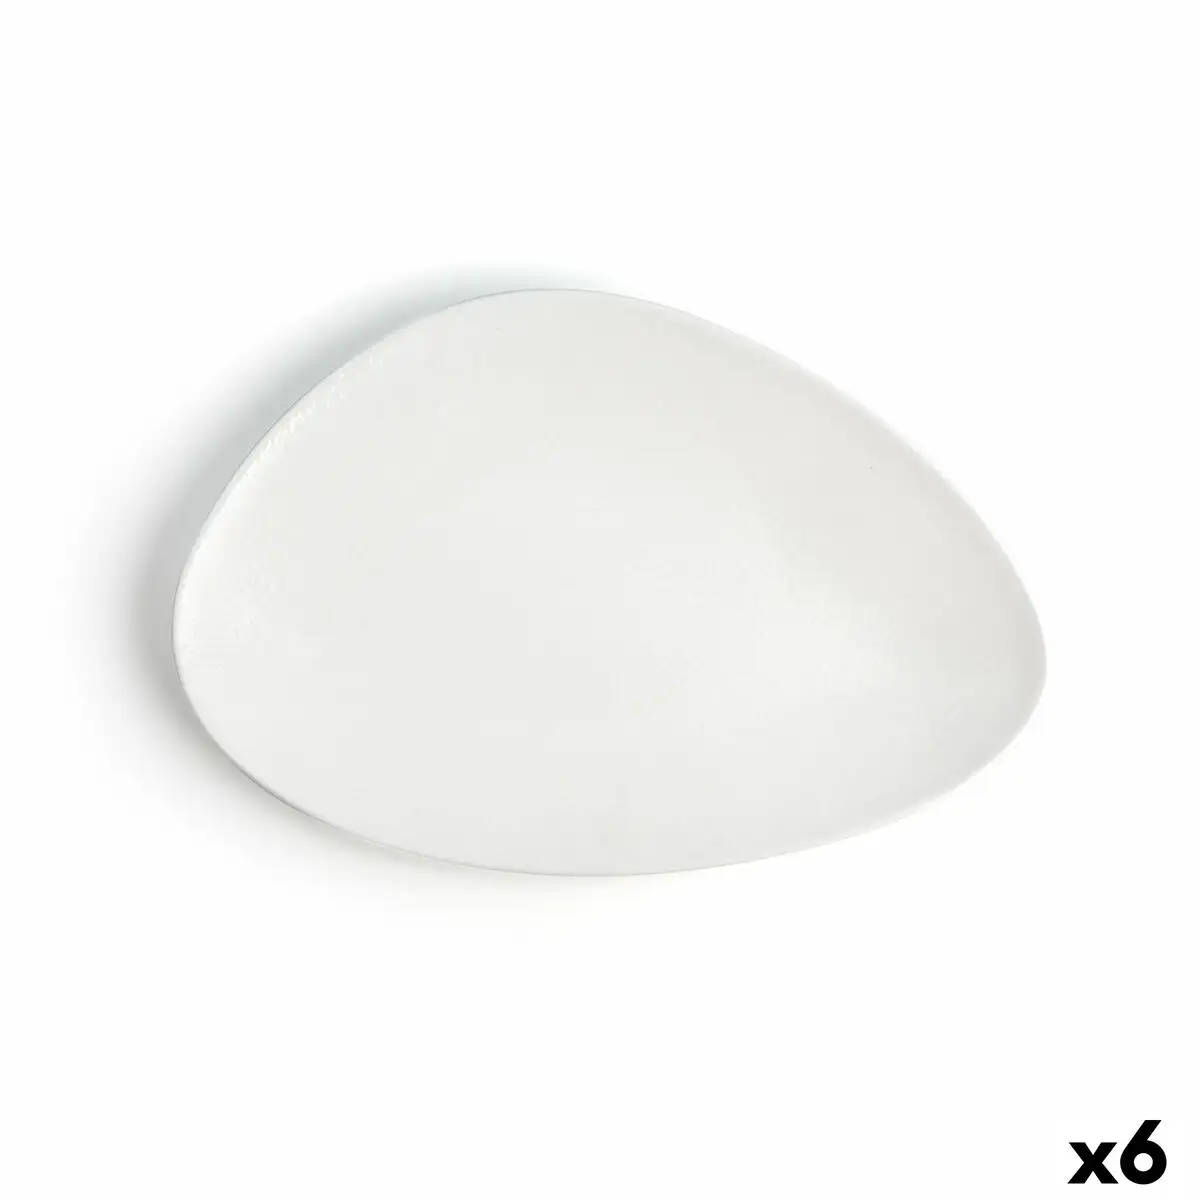 Assiette plate ariane antracita triangulaire ceramique blanc o 29 cm 6 unites _4483. DIAYTAR SENEGAL - Là où Chaque Produit est une Trouvaille Unique. Découvrez notre boutique en ligne et trouvez des articles qui vous distinguent par leur originalité.